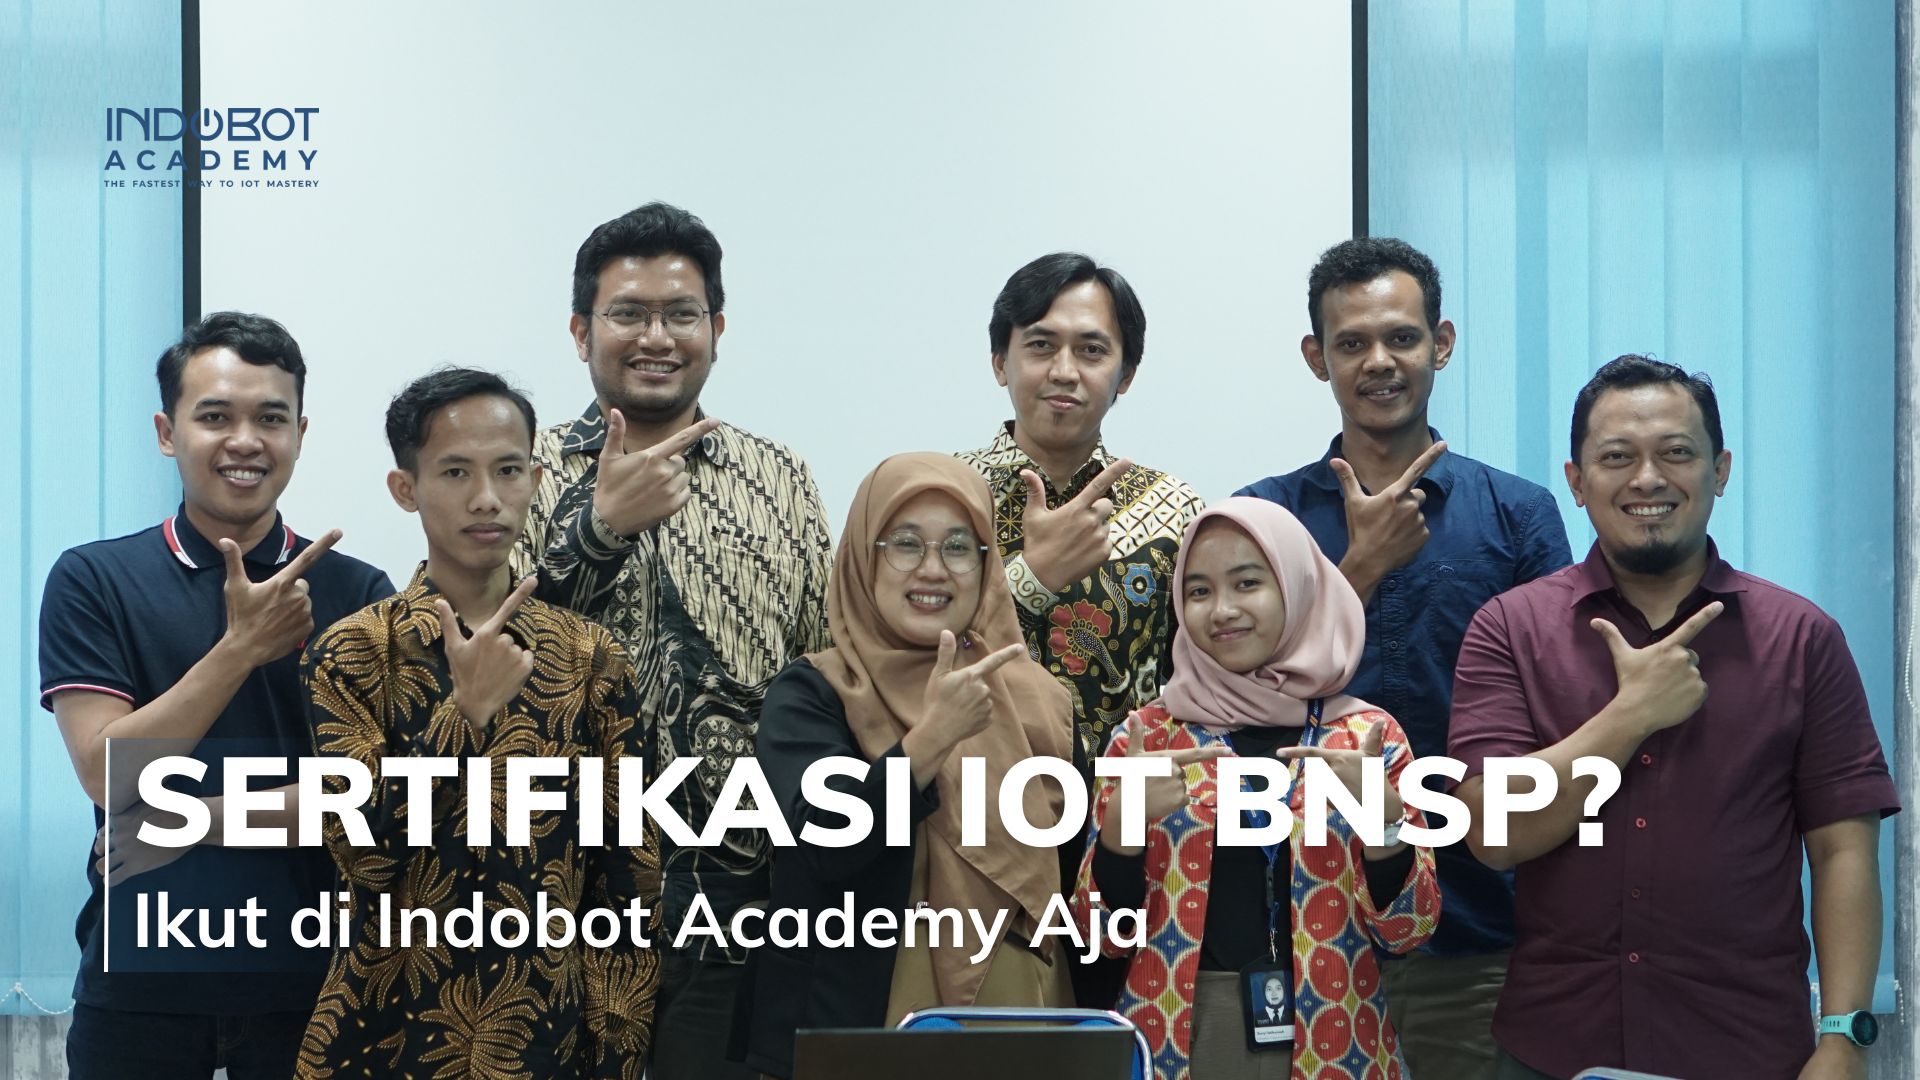 sertifikasi-iot-bnsp-di-indobot-academy-aja